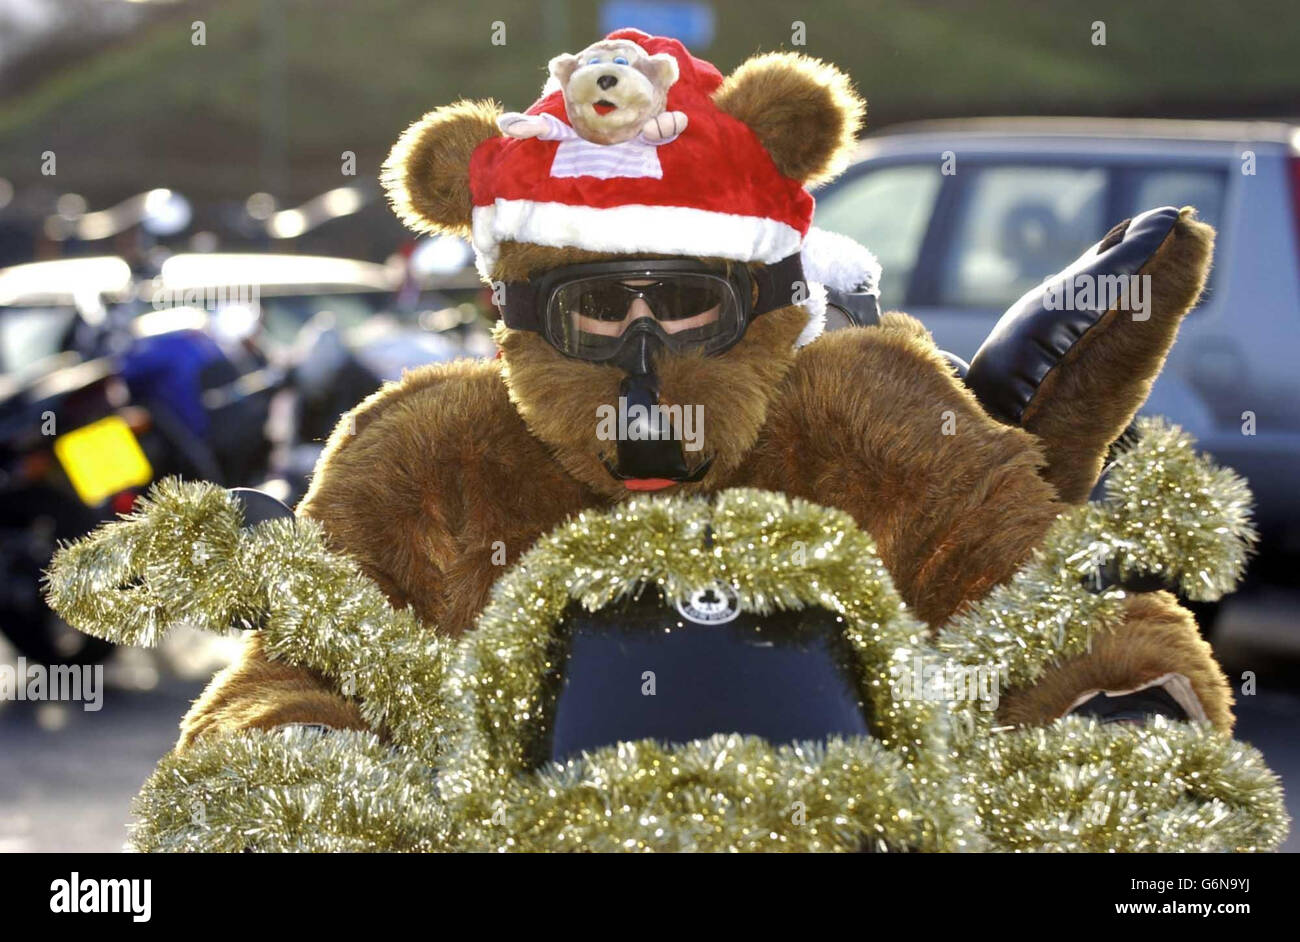 Un motociclista vestito con un abito da orsacchiotto si unisce a oltre un centinaio di motociclisti all'Ace Cafe, Brent, a nord di Londra, per consegnare regali di Natale ai bambini al Central Middlesex Hospital, St Mary's Hospital e St Thomas' Hospital. Foto Stock